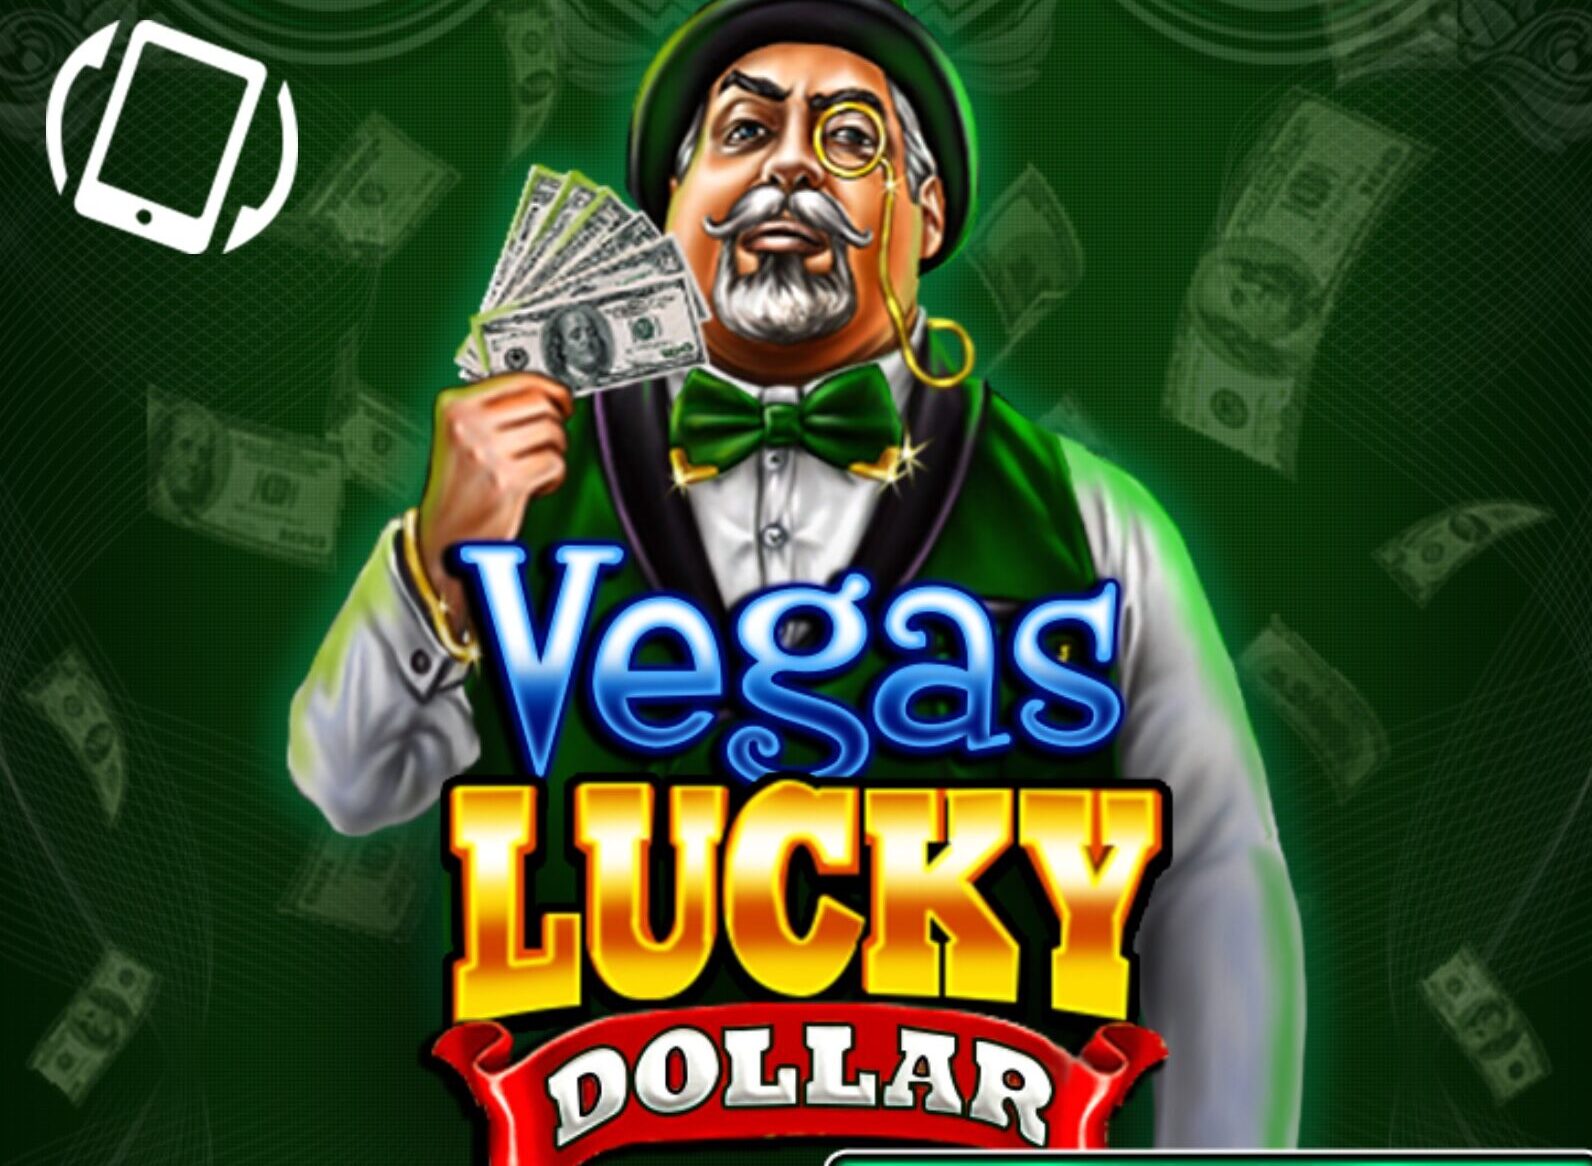 Vegas Lucky Dollar